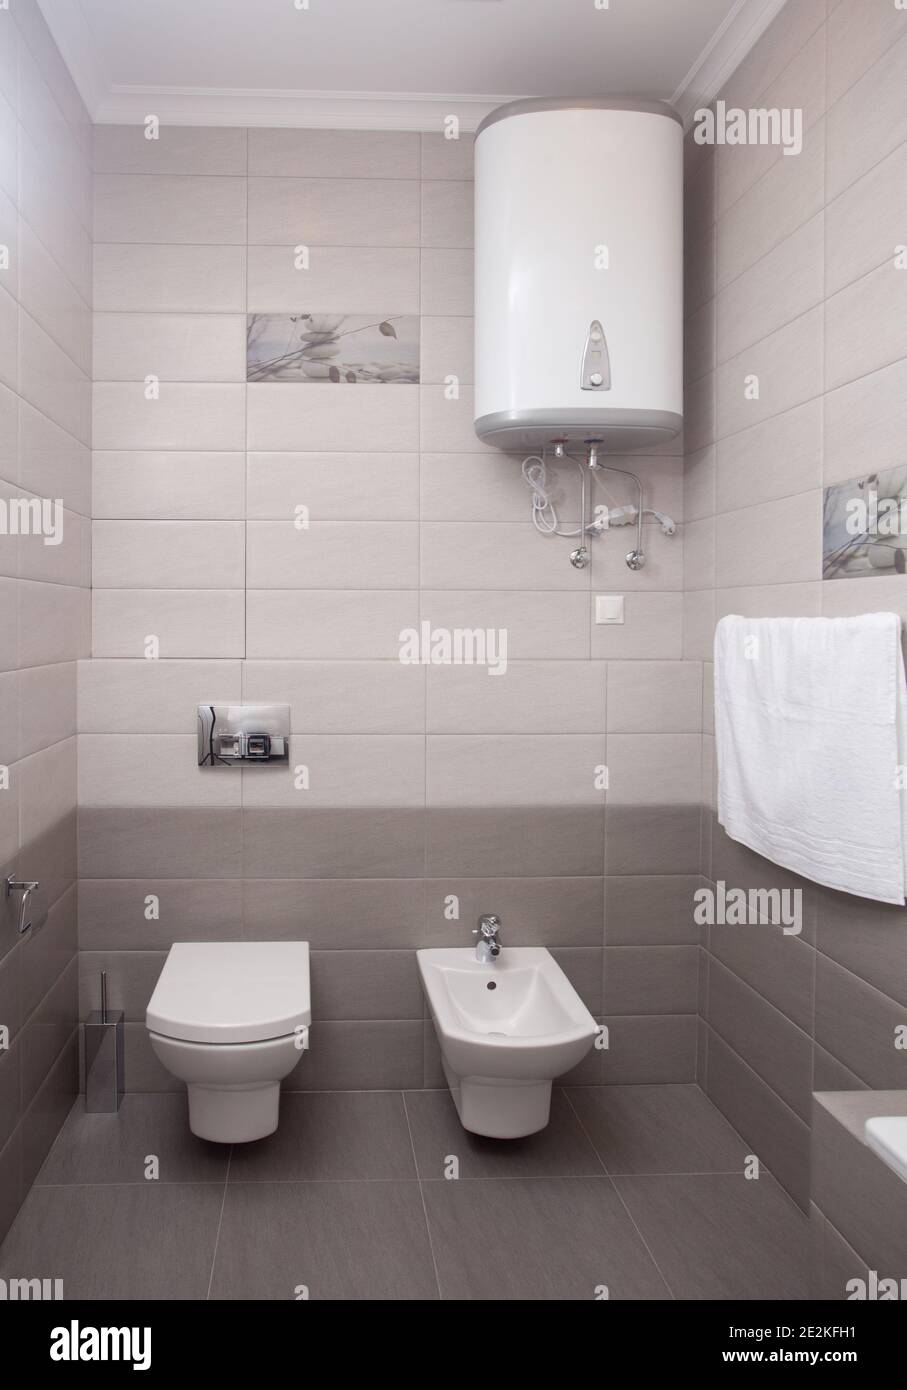 décor intérieur minimaliste, toilette d'appartement moderne, lavabo et chaudière dans des couleurs claires, personne, avec espace copie, vertical Banque D'Images